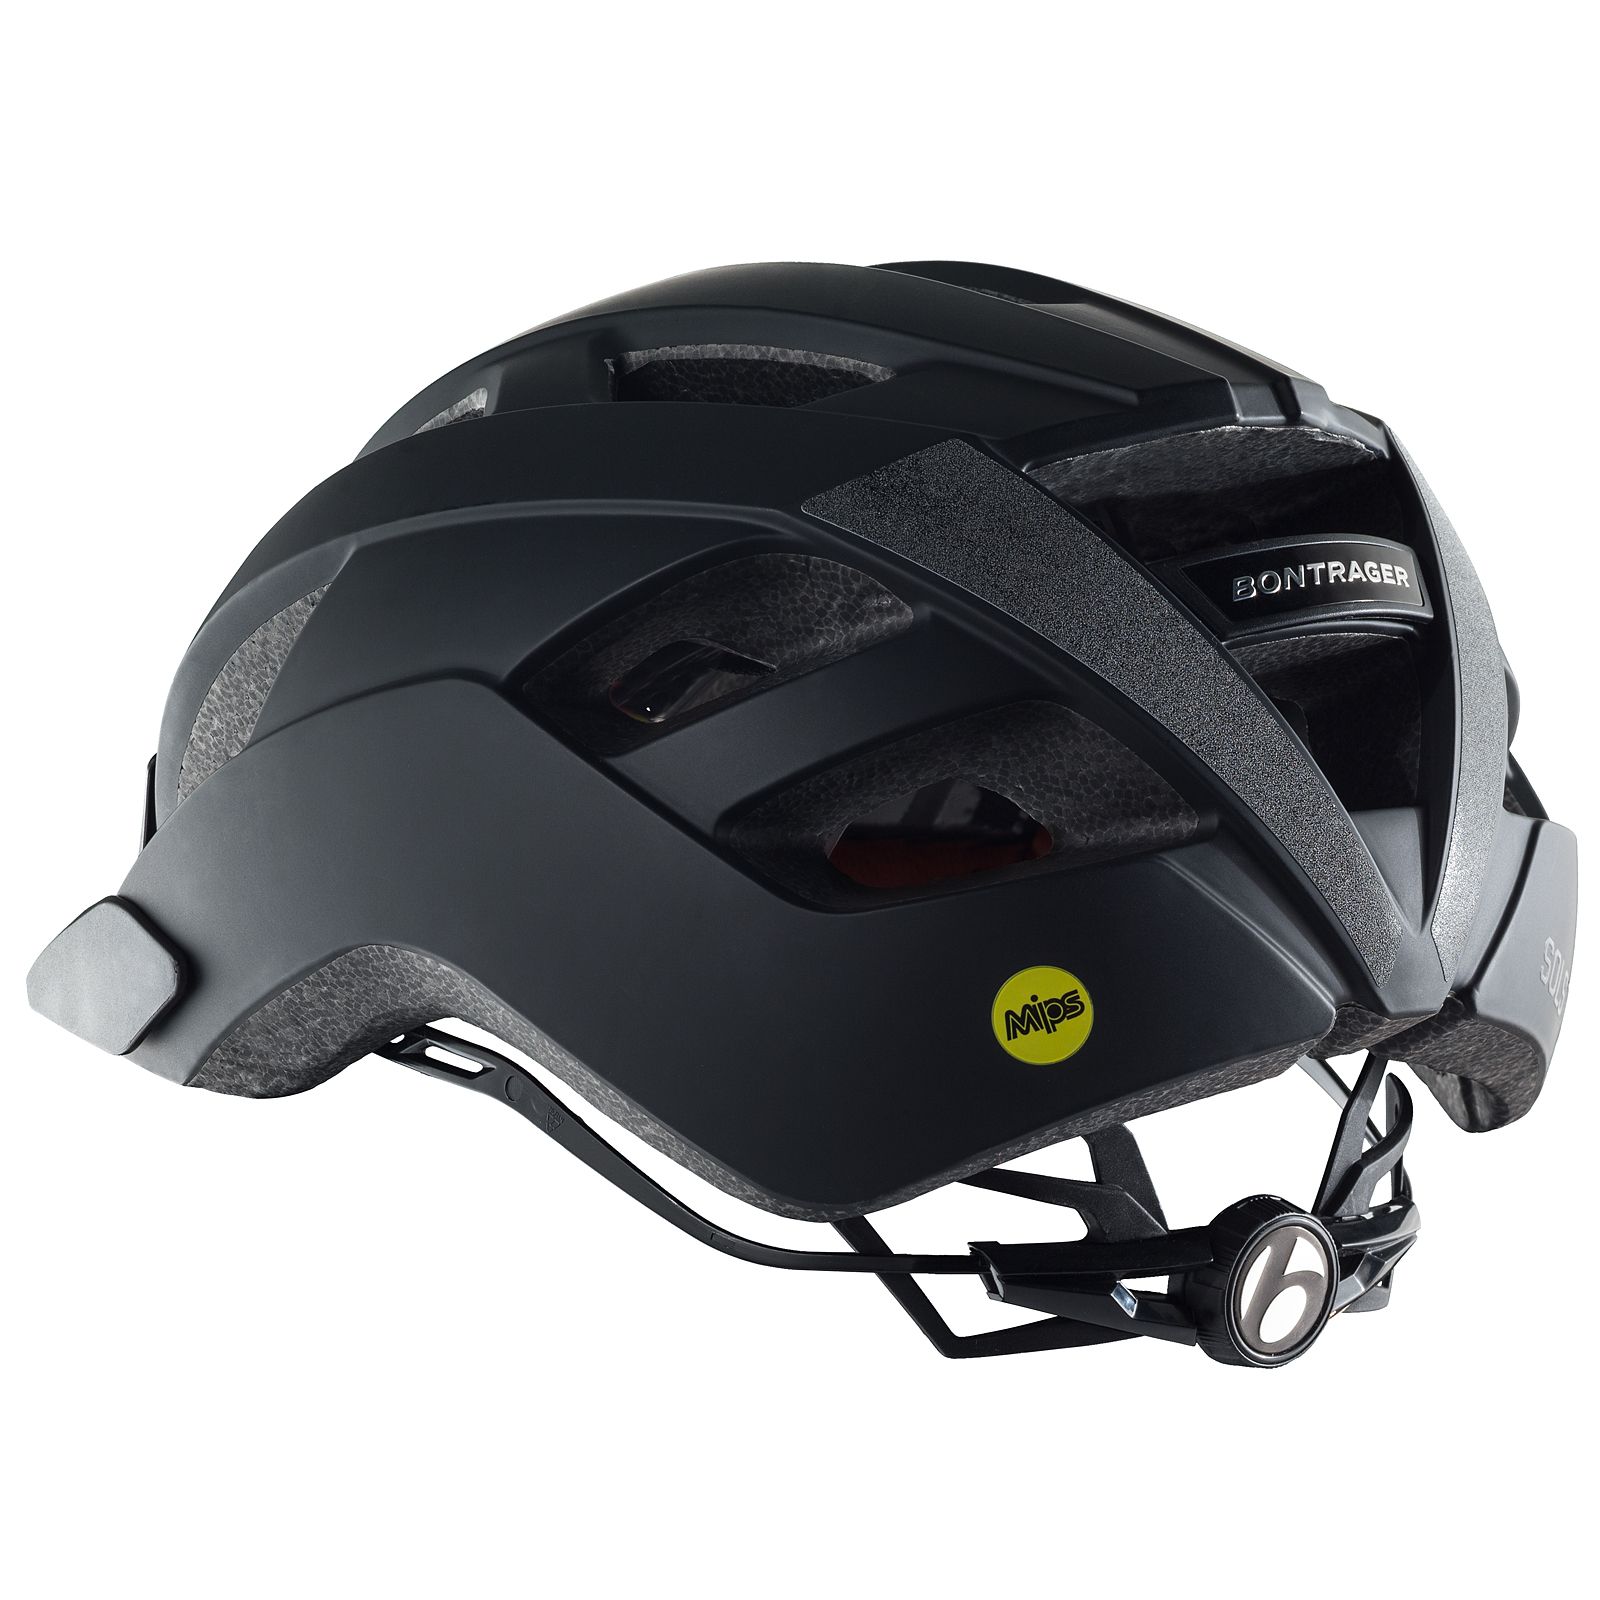 Bontrager Solstice MIPS Fahrrad Helm schwarz 2019 von